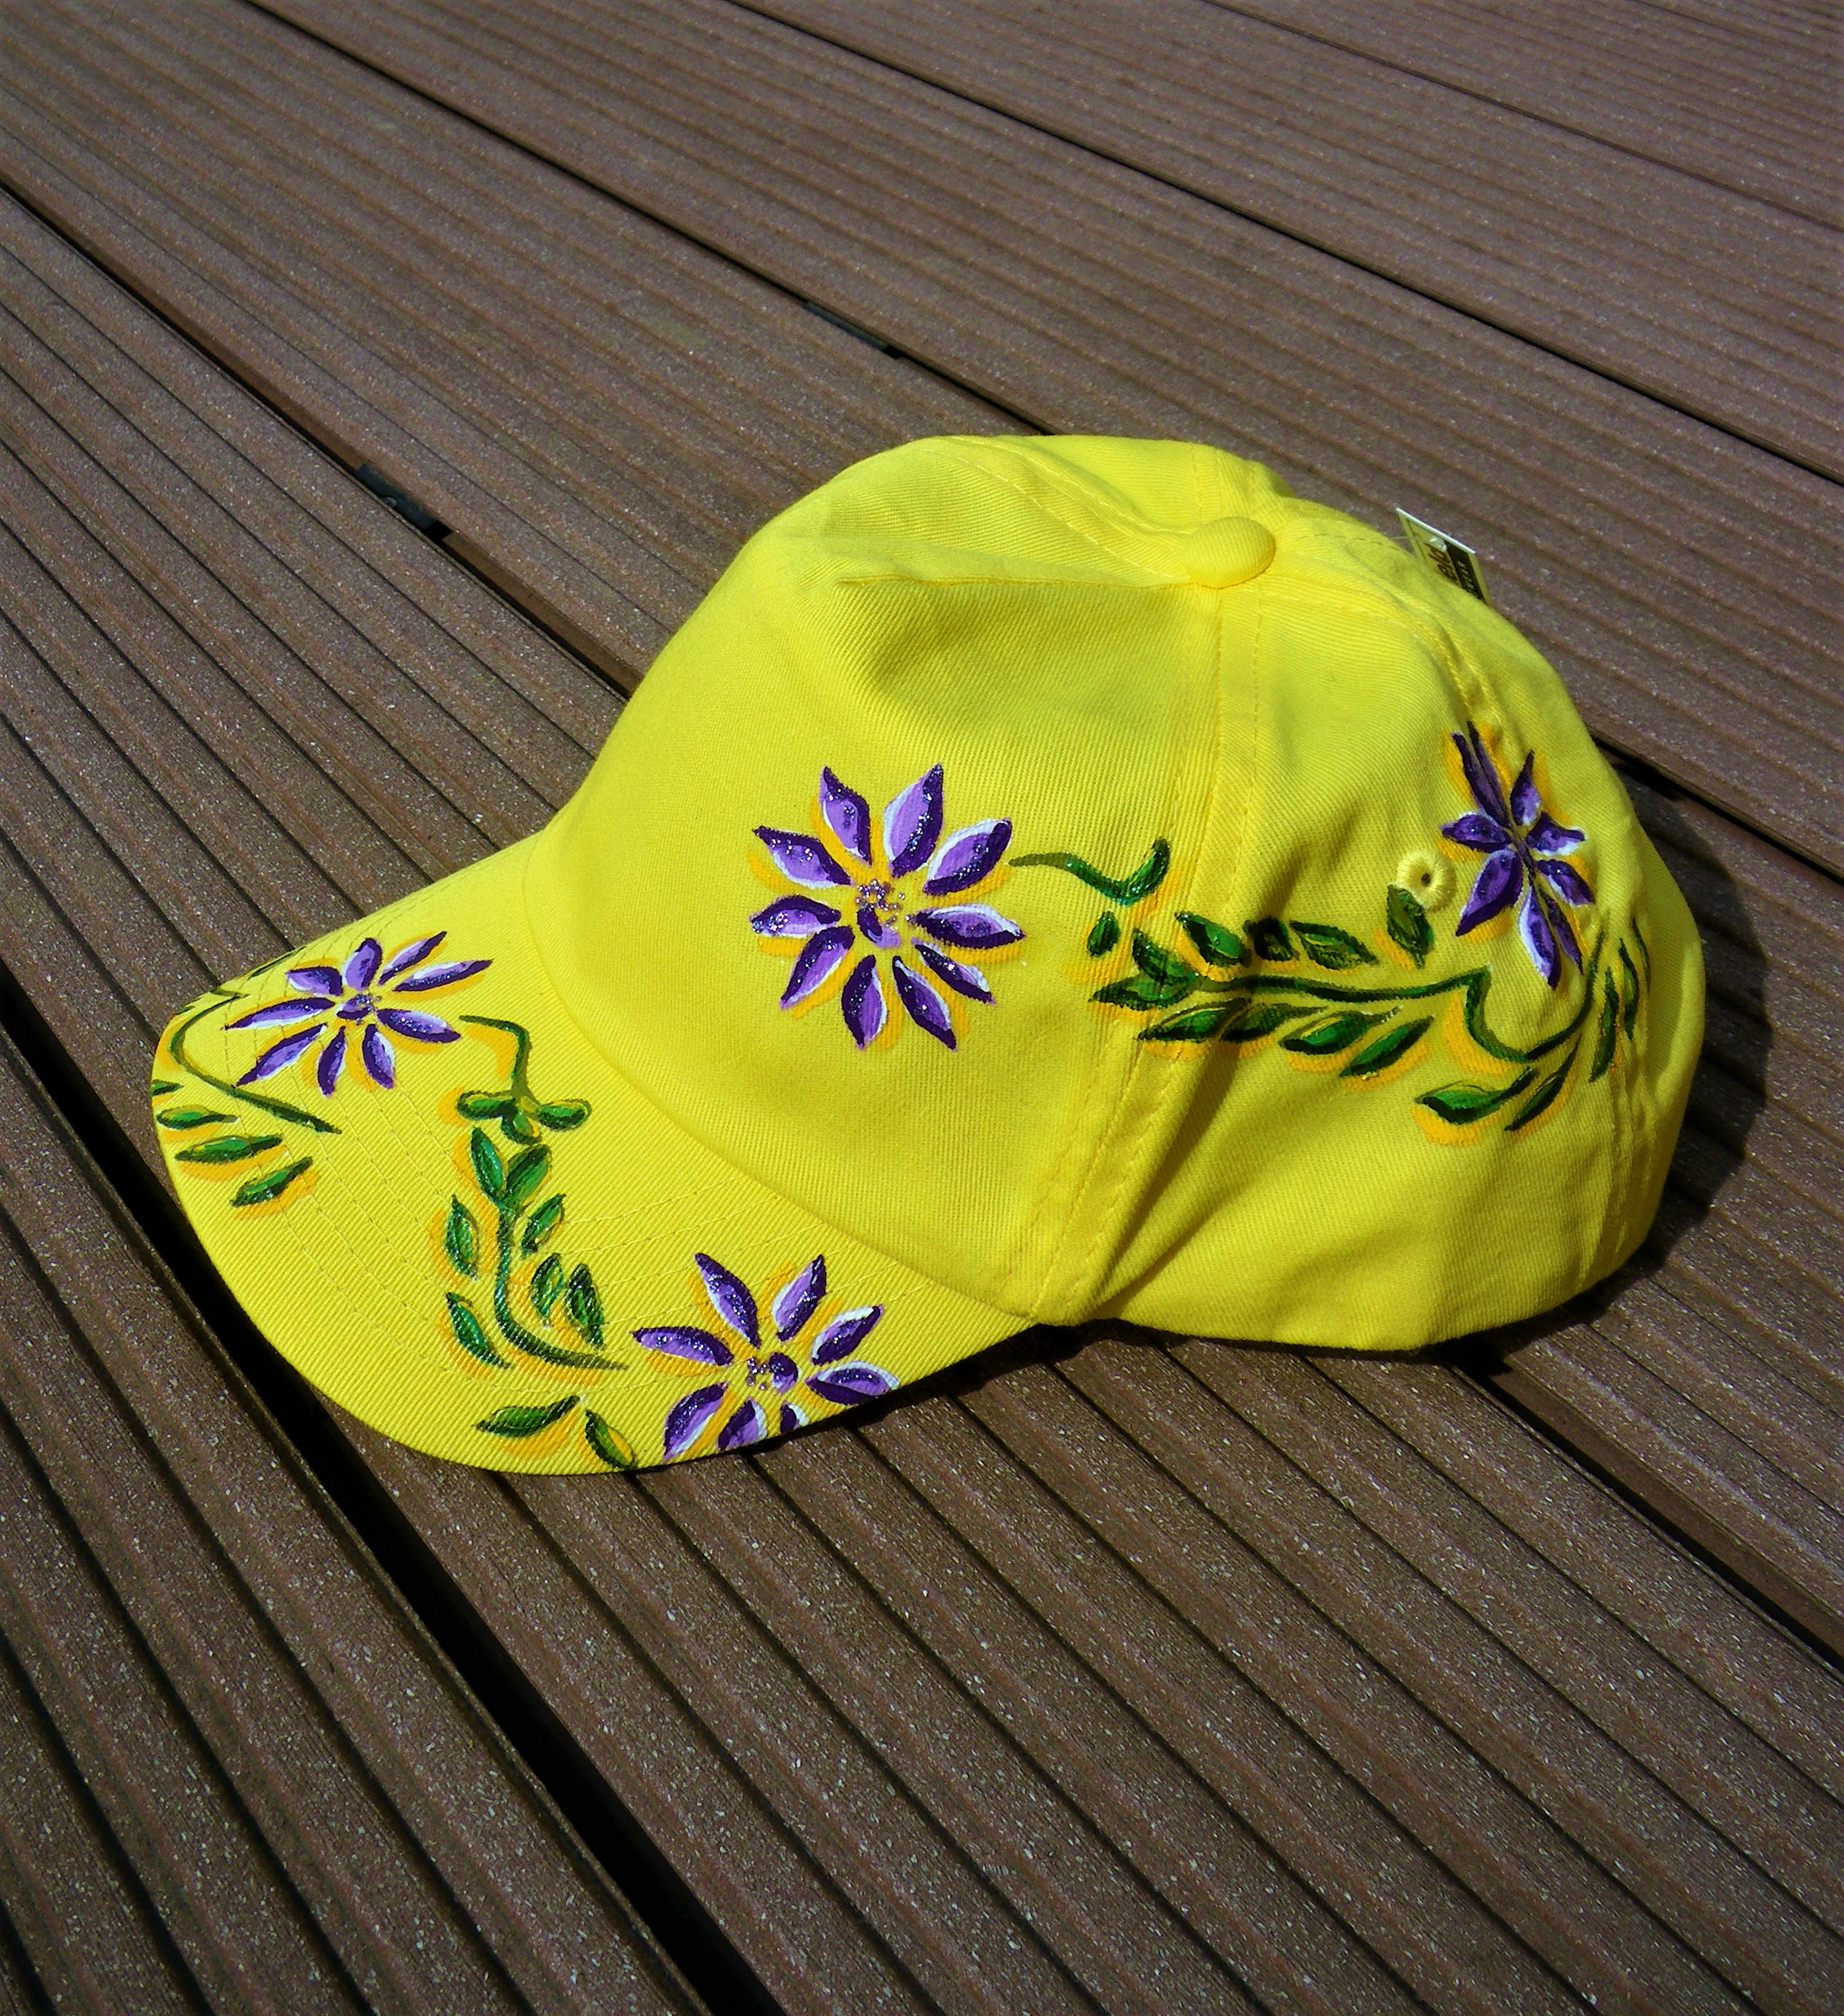 casquette jaune enfant avec fleurs